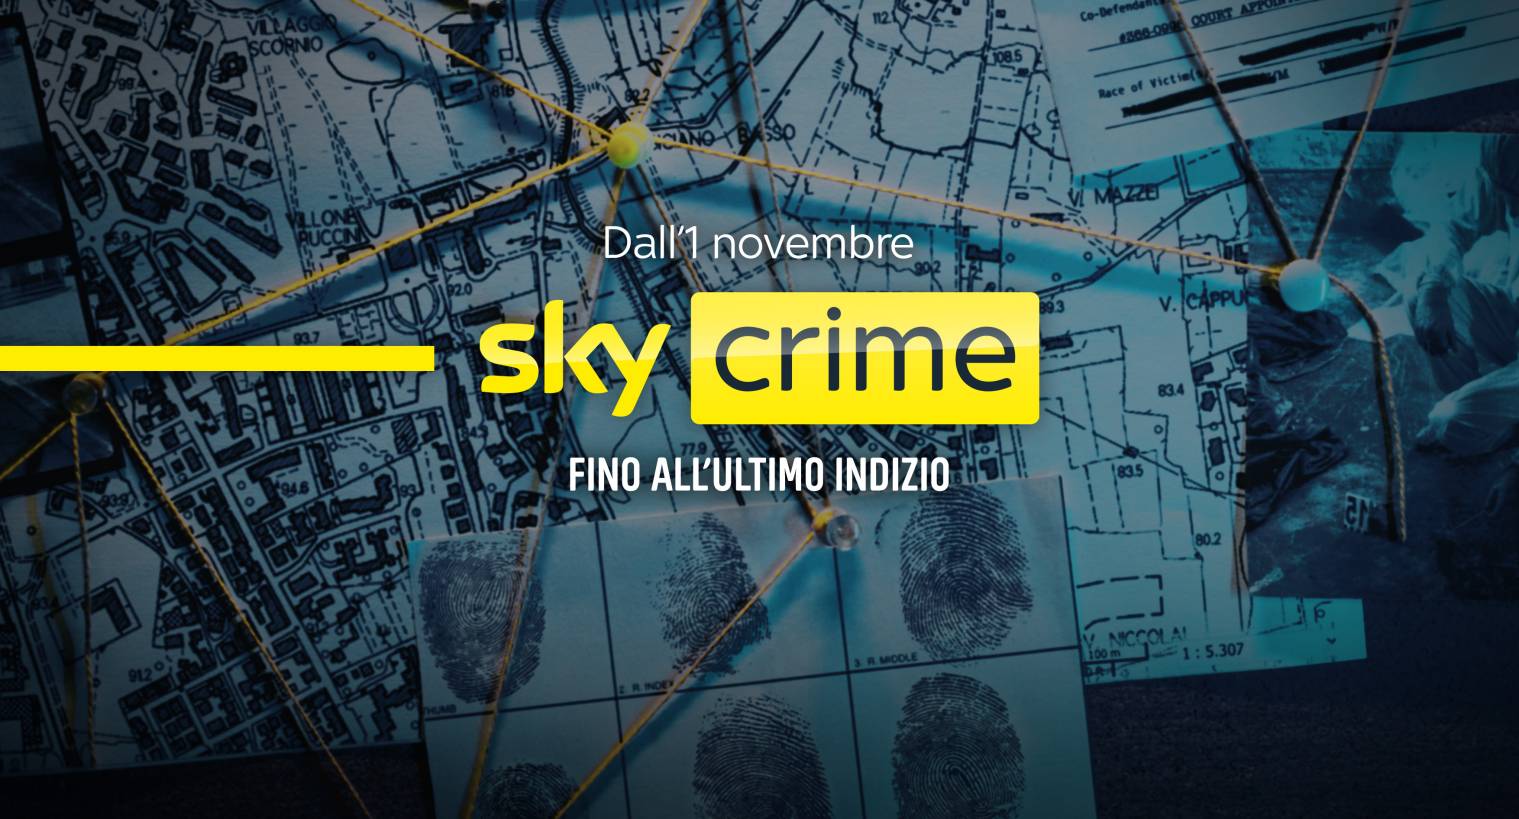 Cronaca nera, misteri e inchieste: da Novembre Sky Crime, il nuovo canale del vero crimine 